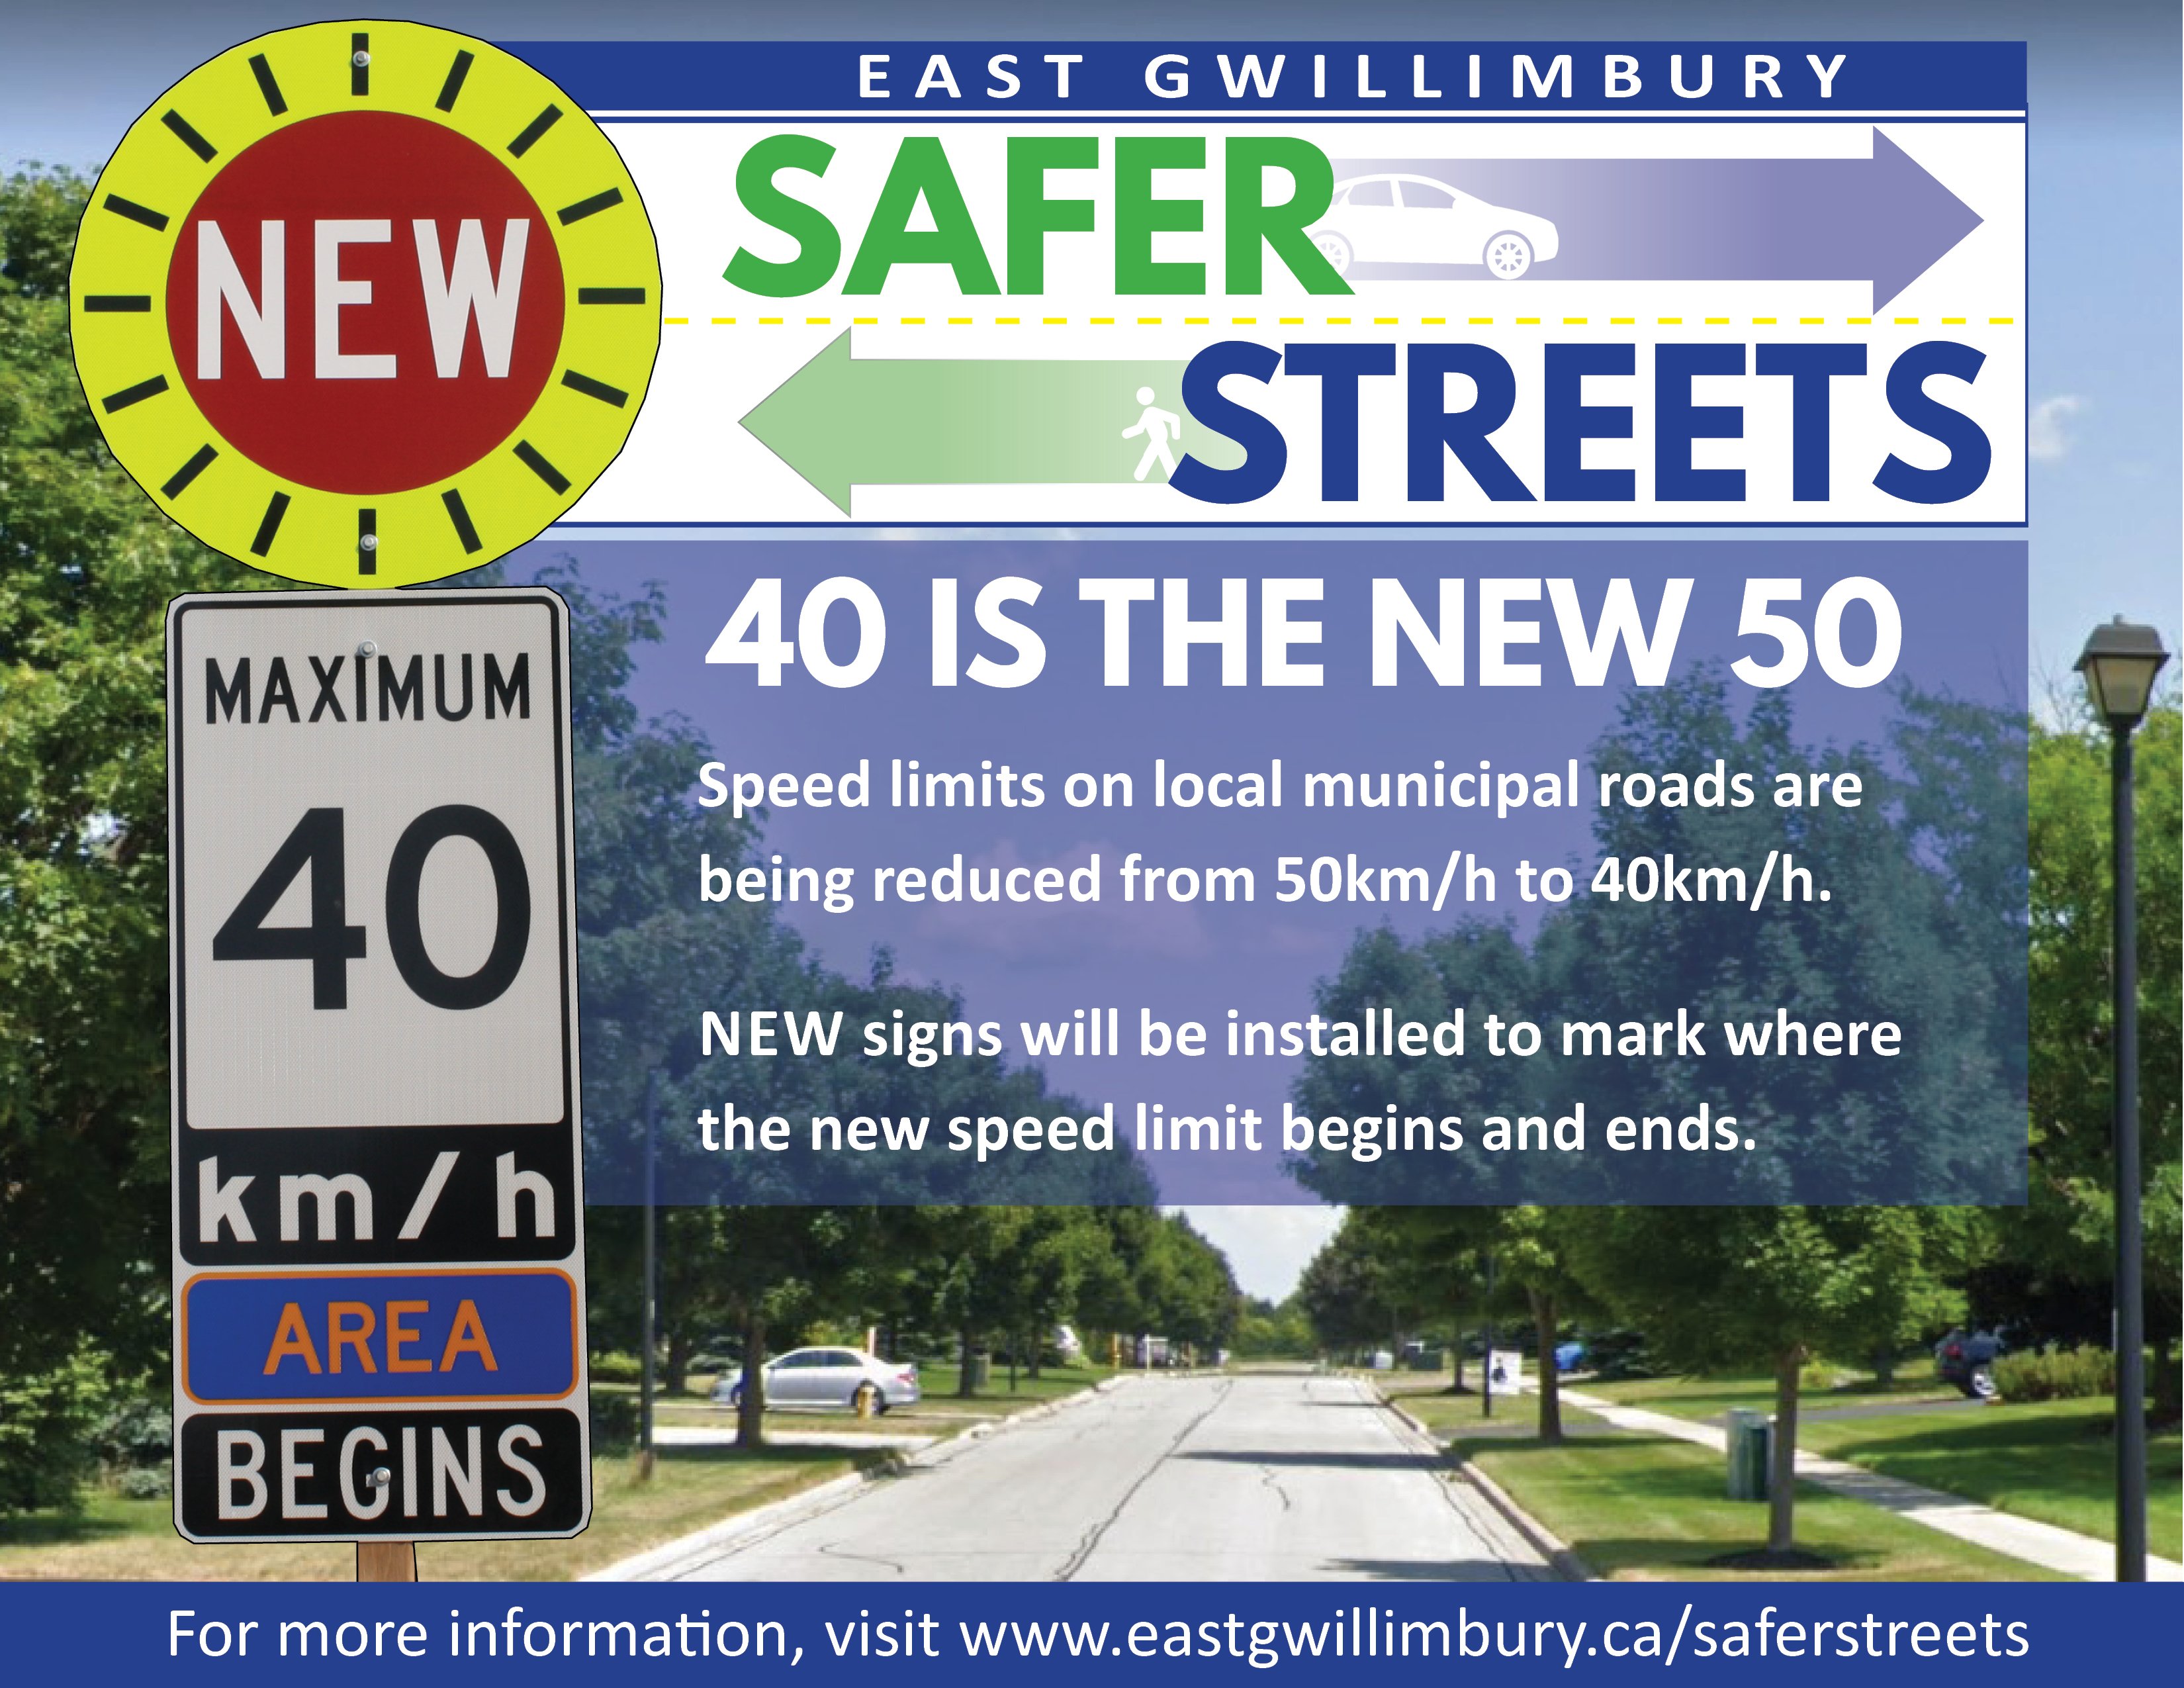 Safer Streets - reduced speeds